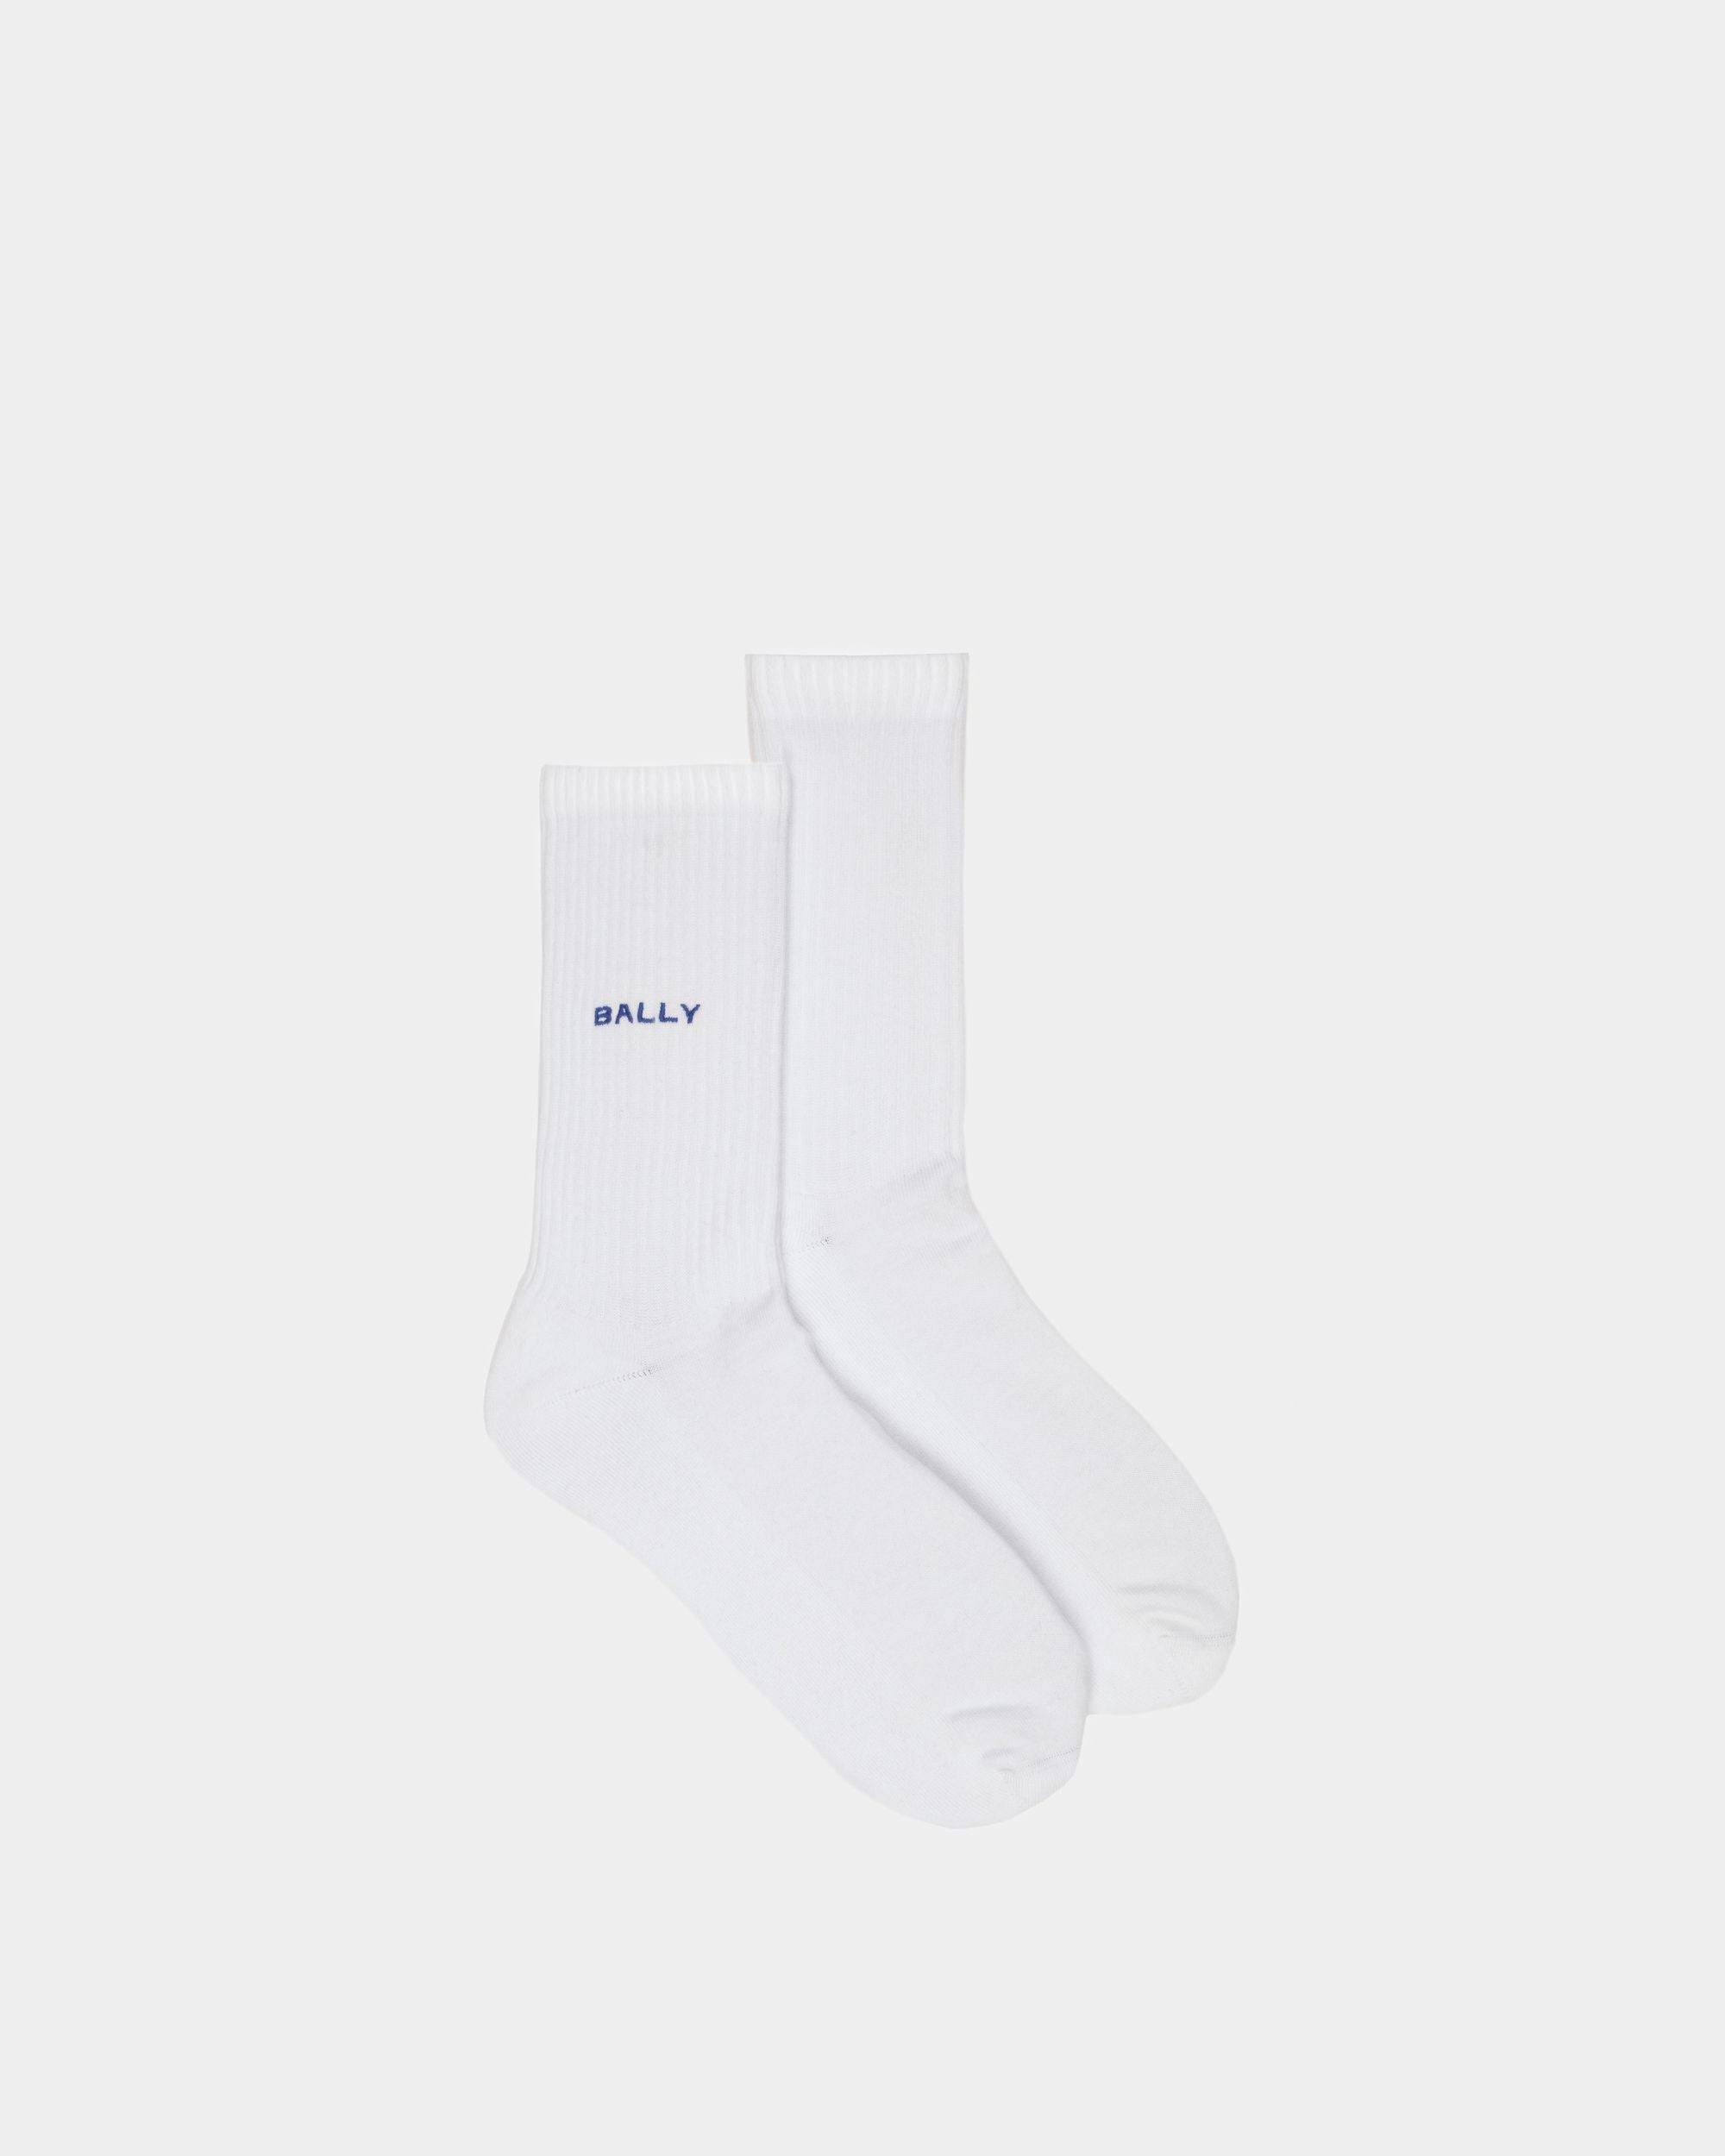 Men's Socks In White Cotton | Bally | Still Life Top